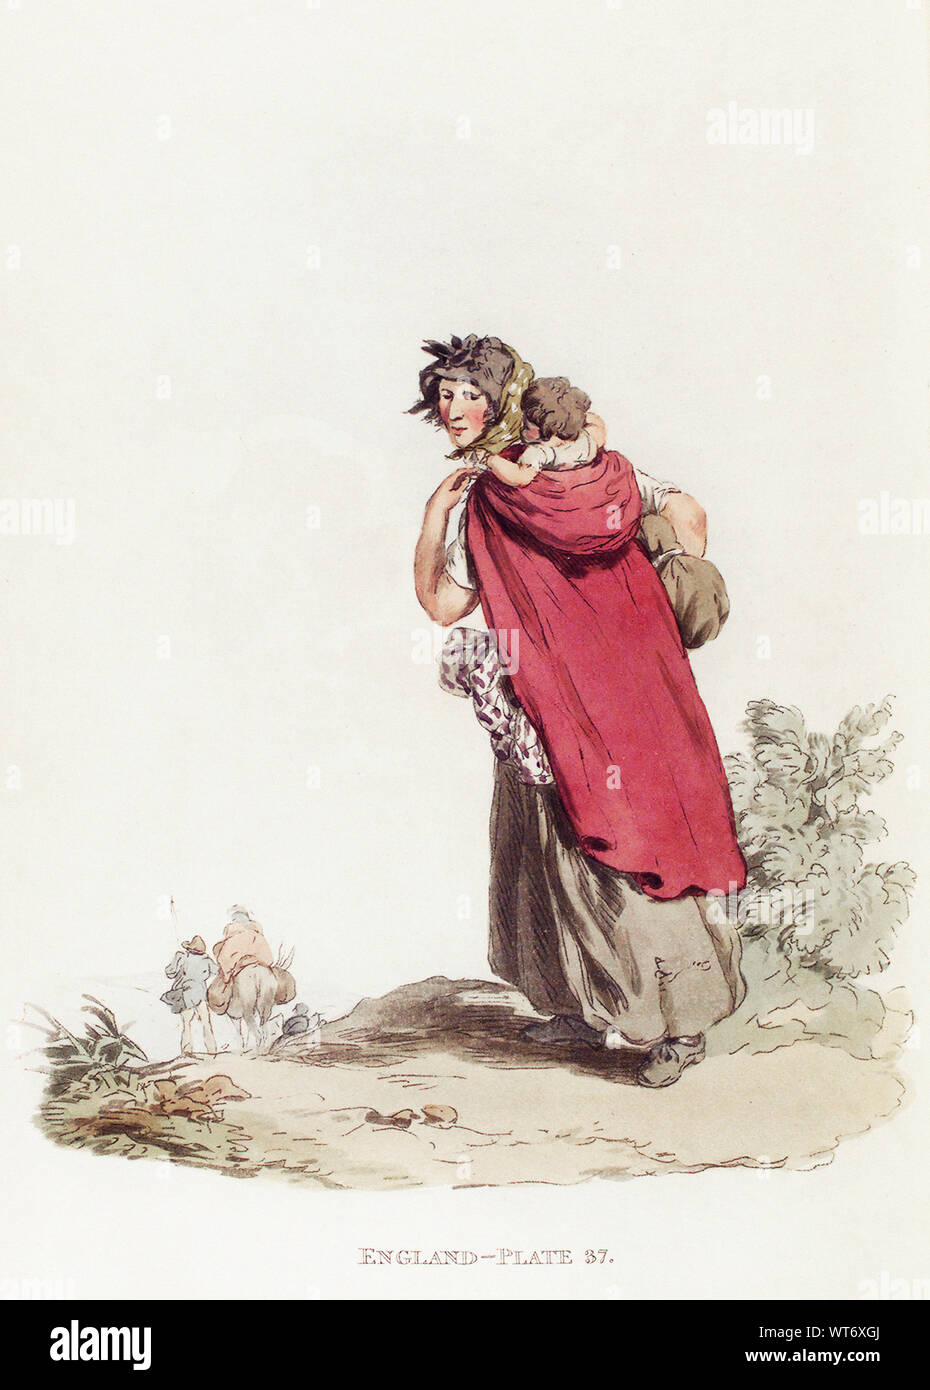 Il pittoresco di rappresentazioni di vestire e modi della lingua inglese - - 1814 - - da William Alexander (1767 1816) - Illustrazione degli Zingari Foto Stock